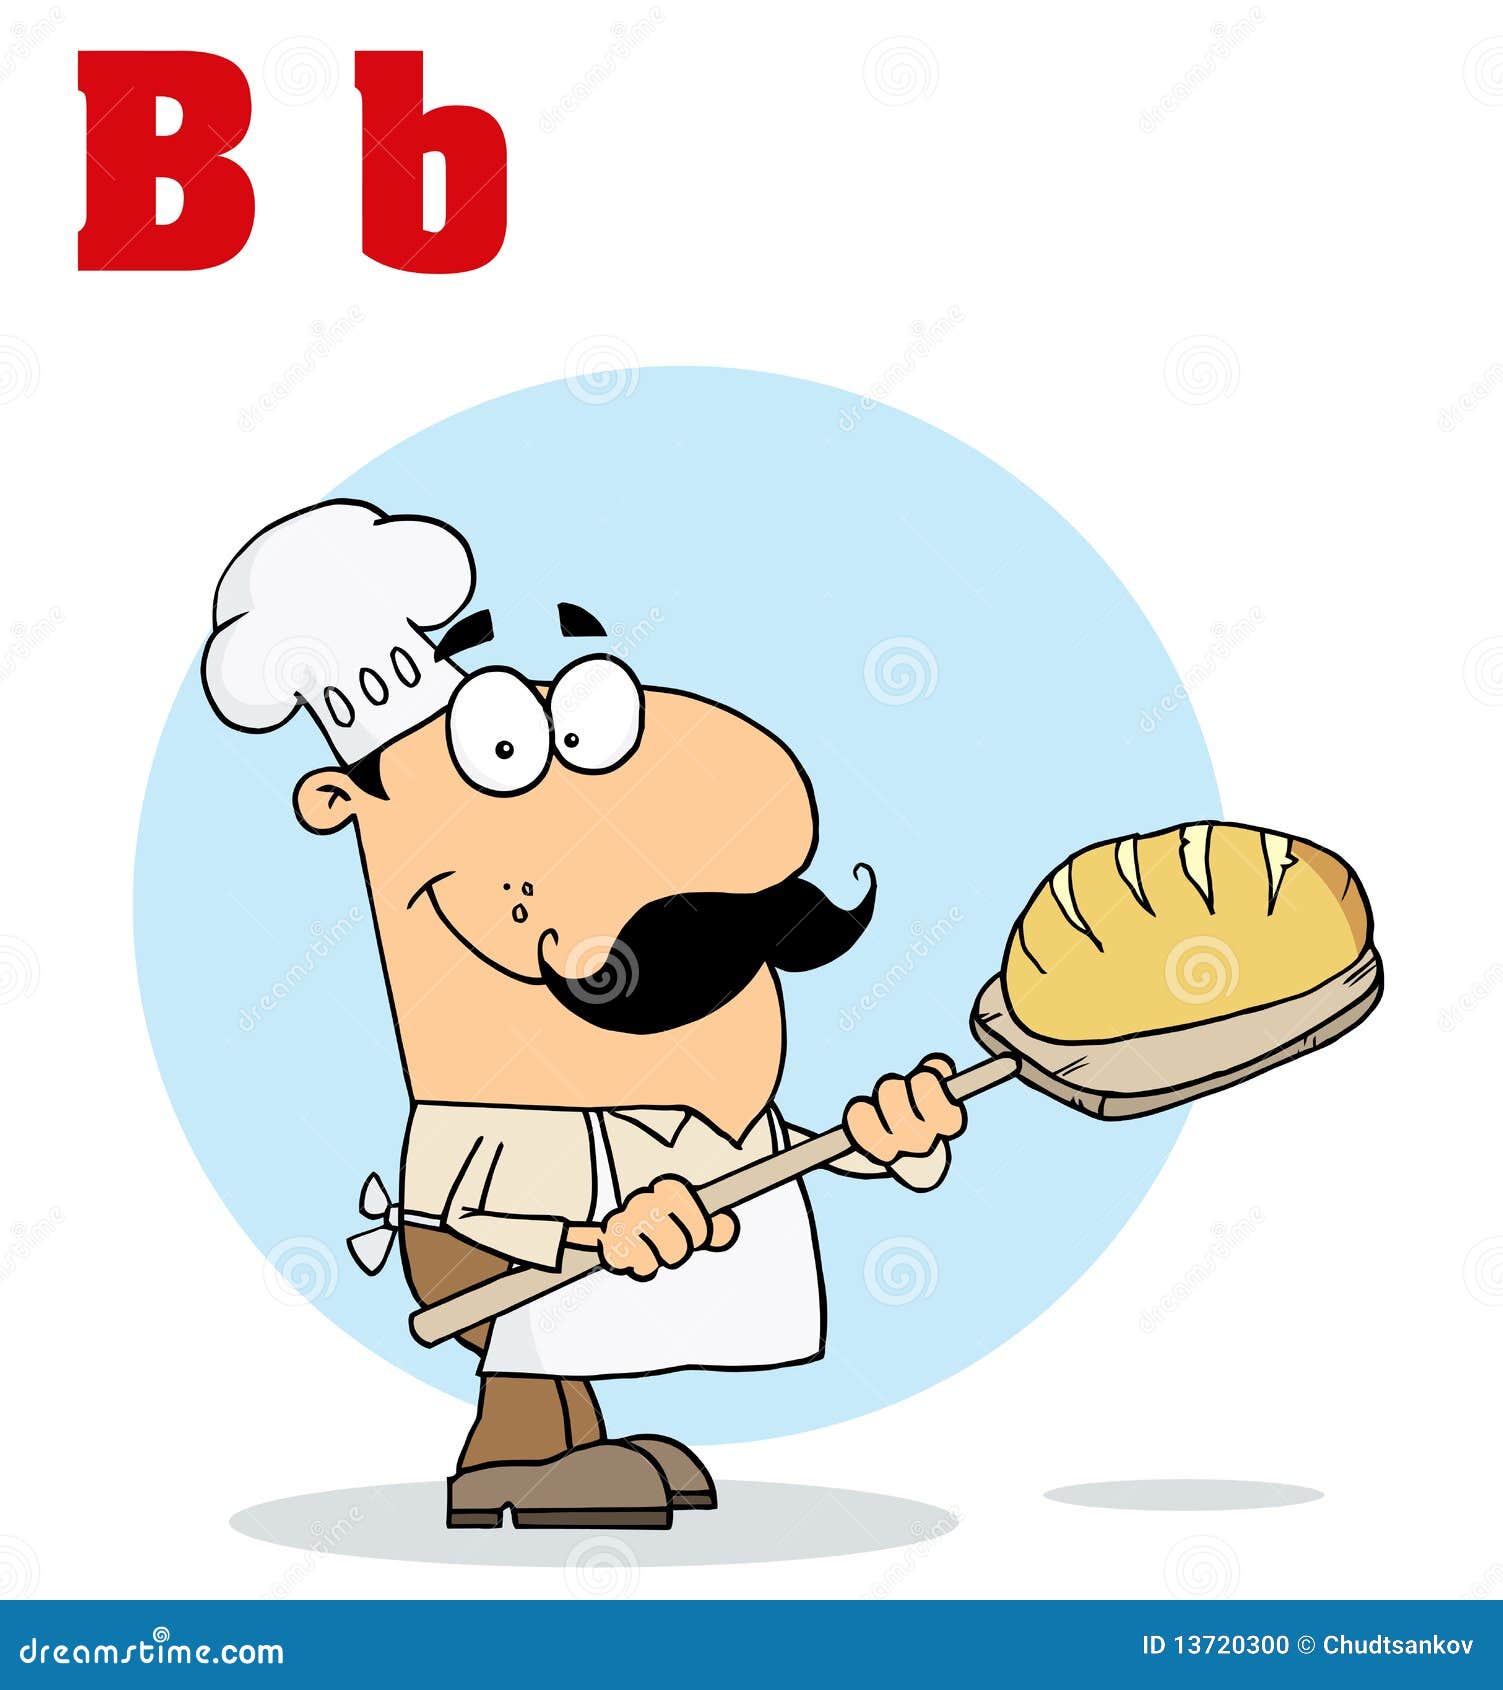 Cartoon Bread Maker Man Stock Illustrations – 54 Cartoon Bread Maker Man  Stock Illustrations, Vectors & Clipart - Dreamstime